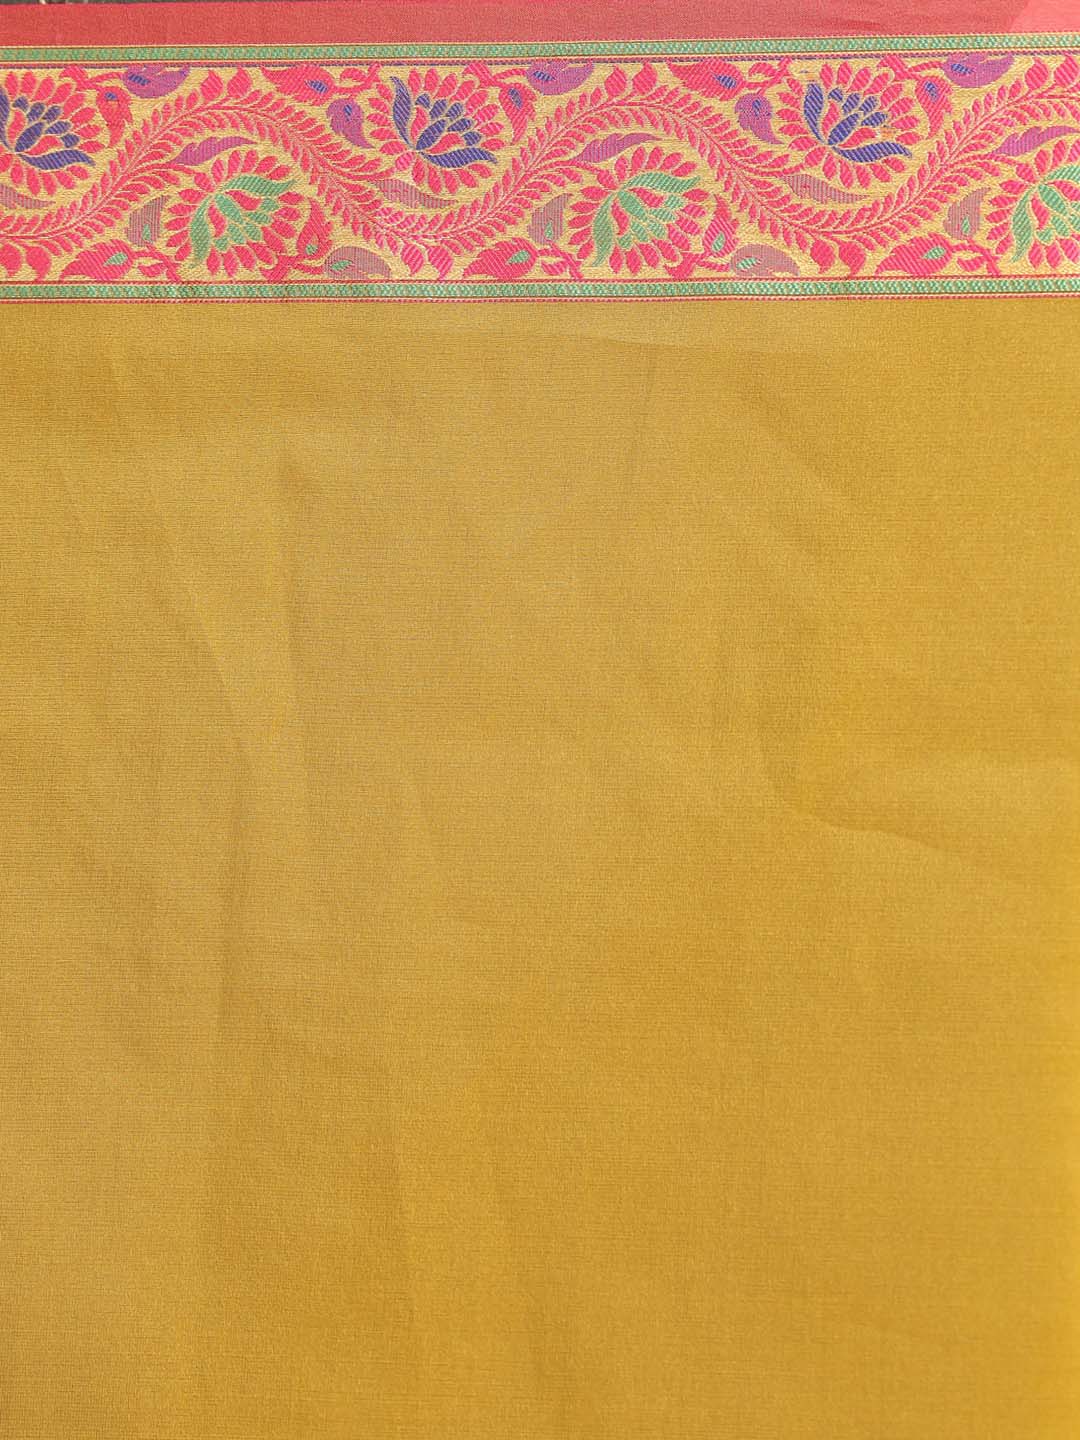 Indethnic Banarasi Yellow Solid Party Wear Saree - Saree Detail View